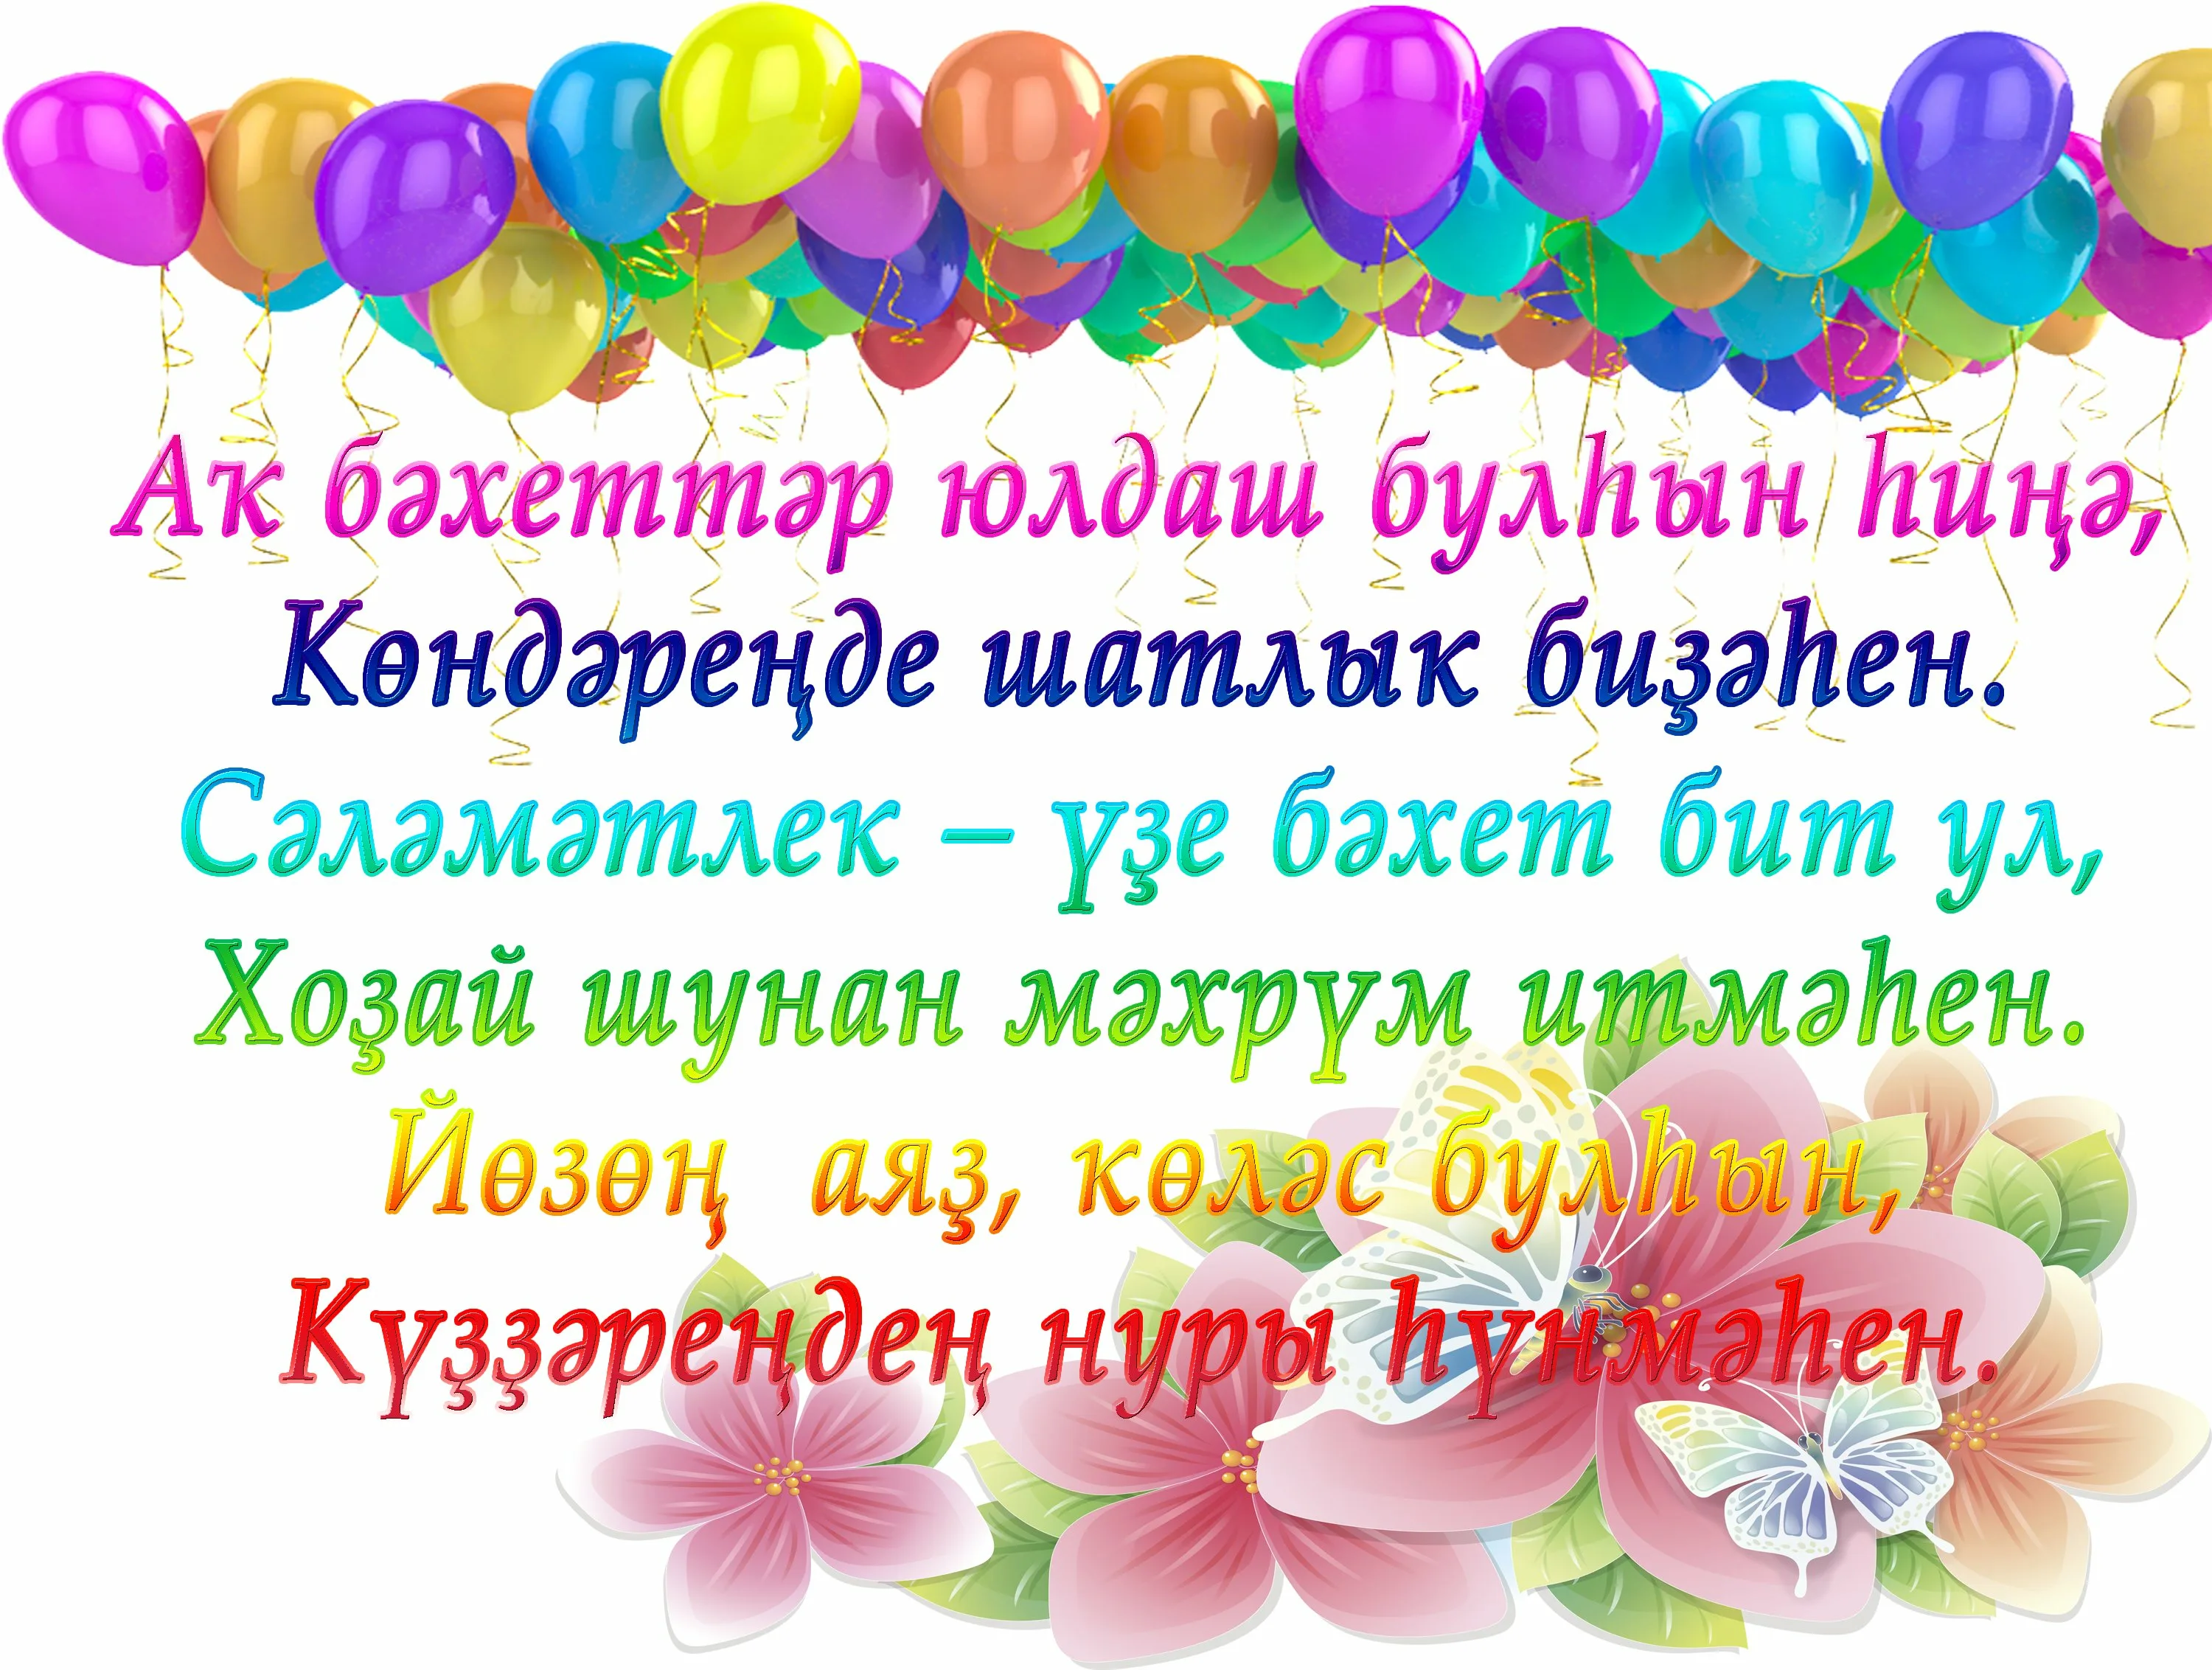 Поздравление на таджикском языке с днем рождения. Поздравления с днём рождения на башкирском. Поздравления с днём рождения на башкирском языке. Поздравления с днём на башкирском языке. Поздравление с юбилеем на башкирском языке.